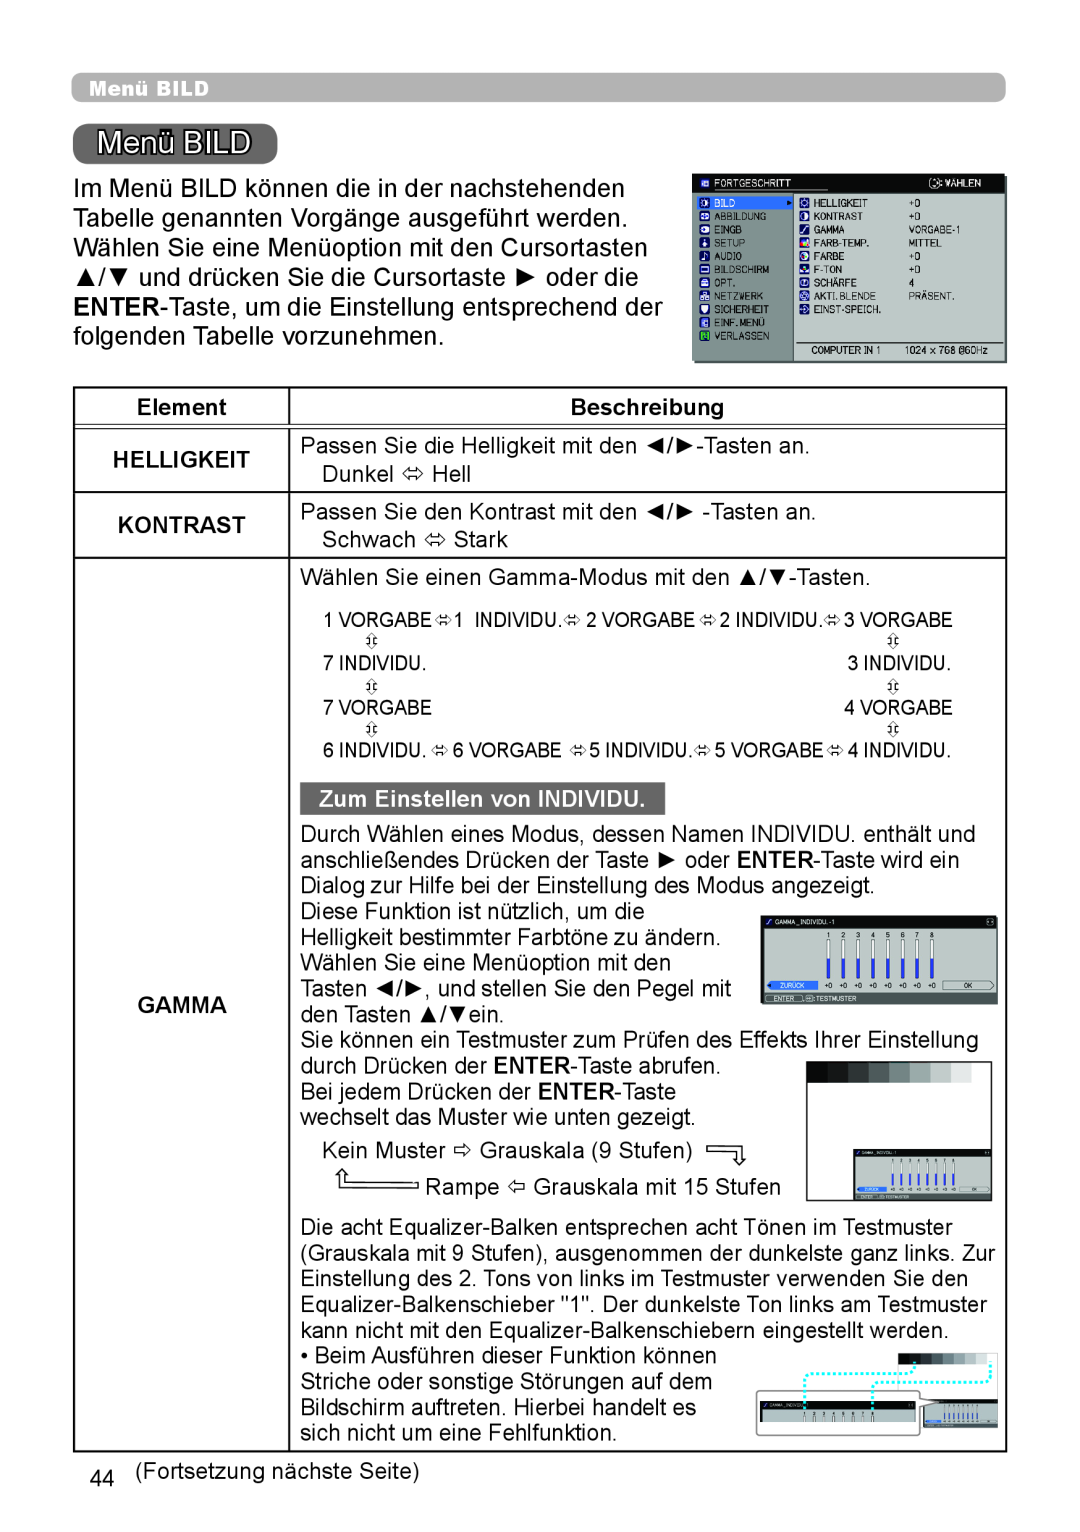 InFocus IN5132 user manual Menü BILD, Element, Beschreibung, Helligkeit, Kontrast, Zum Einstellen von INDIVIDU, Gamma 